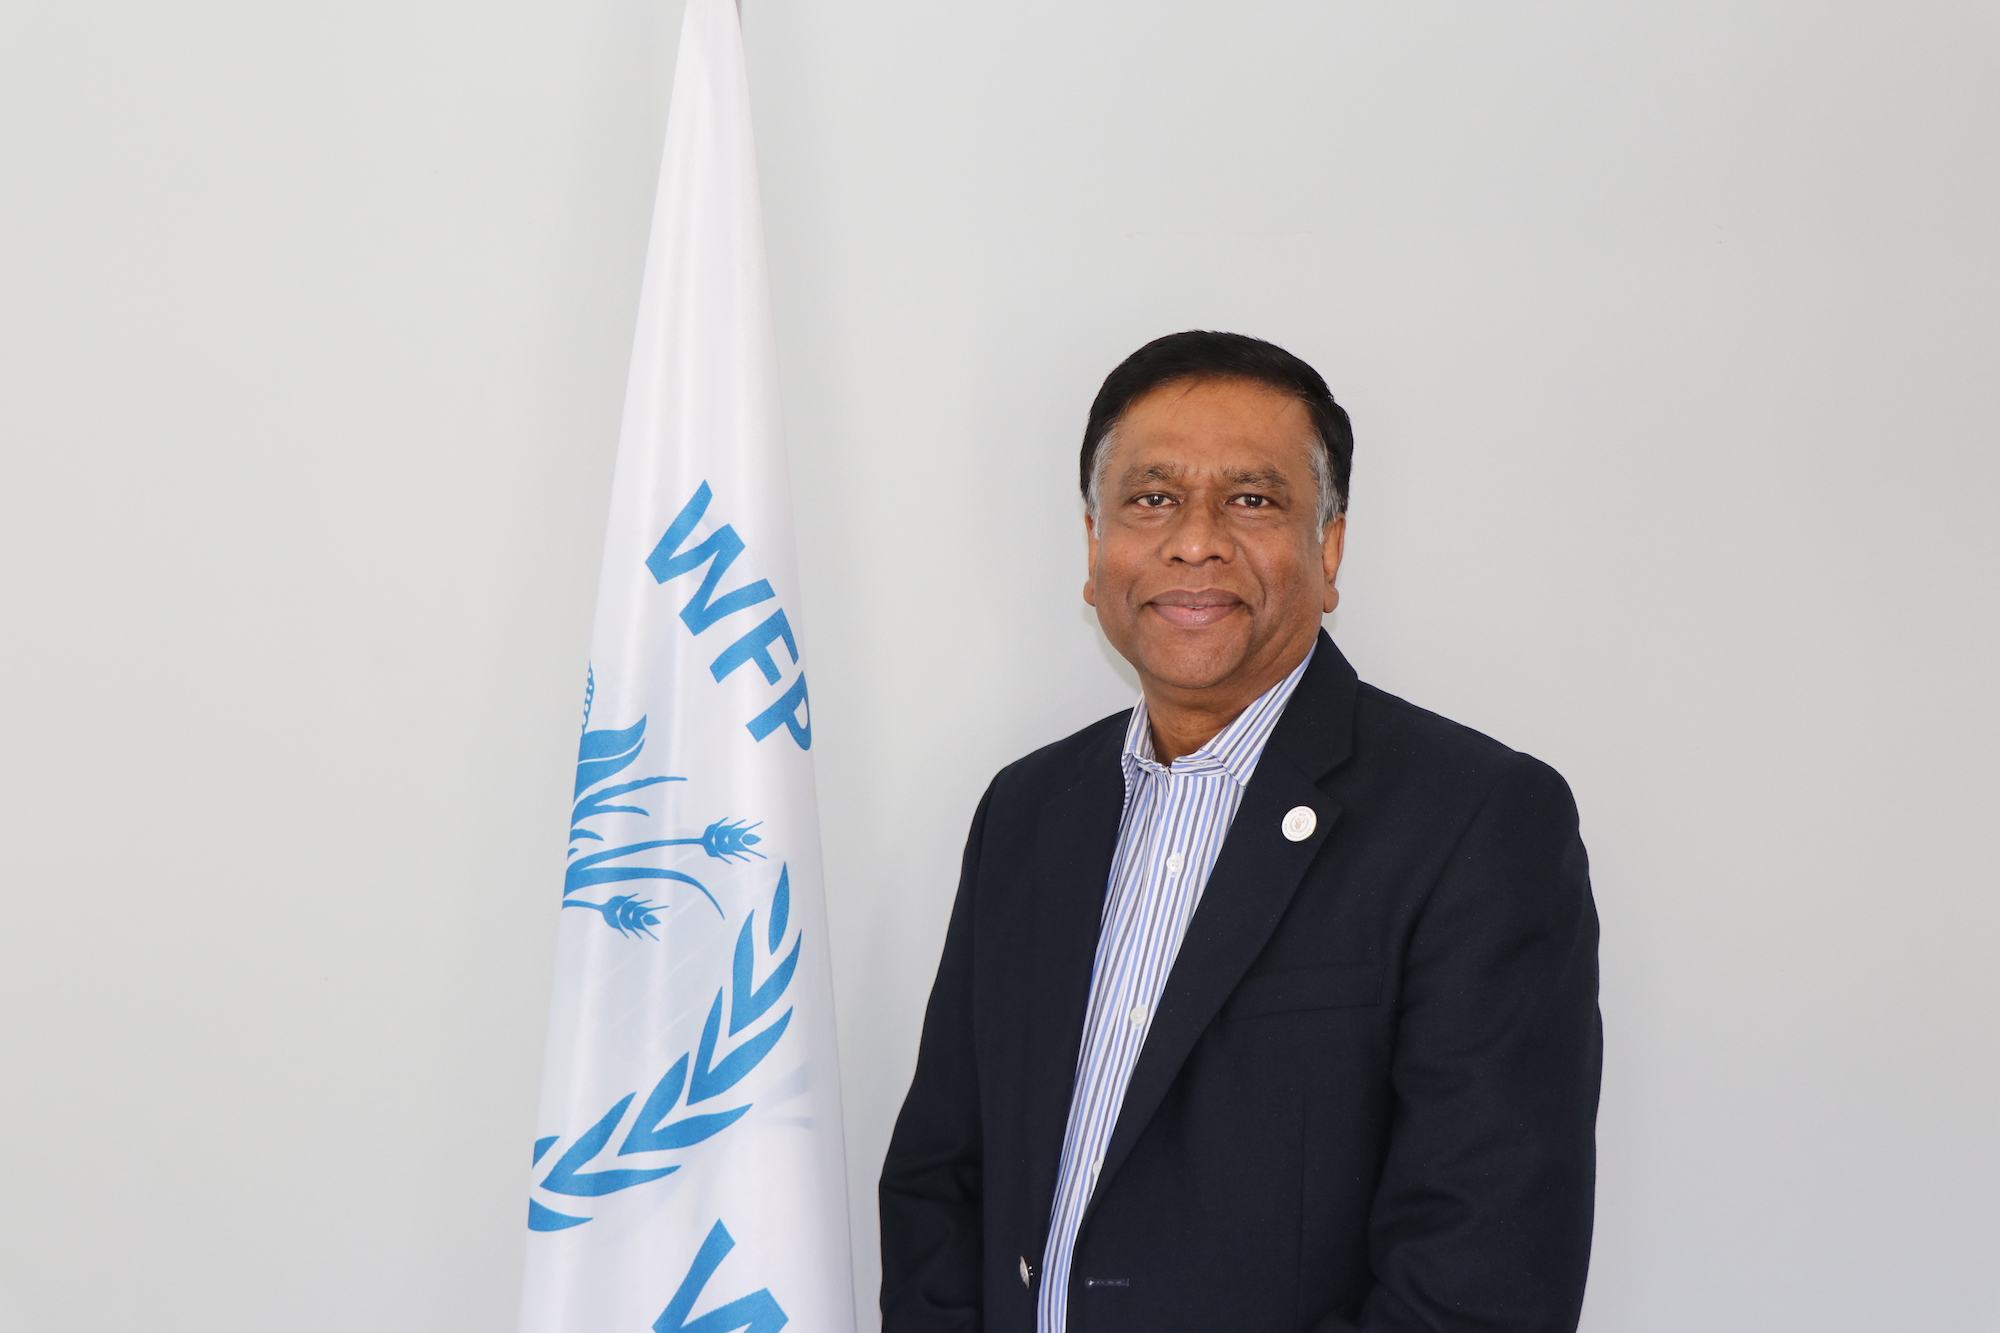 श्रीलंका में विश्व खाद्य कार्यक्रम के कन्ट्री डायरेक्टर, अब्दुर रहीम सिद्दीकी. 